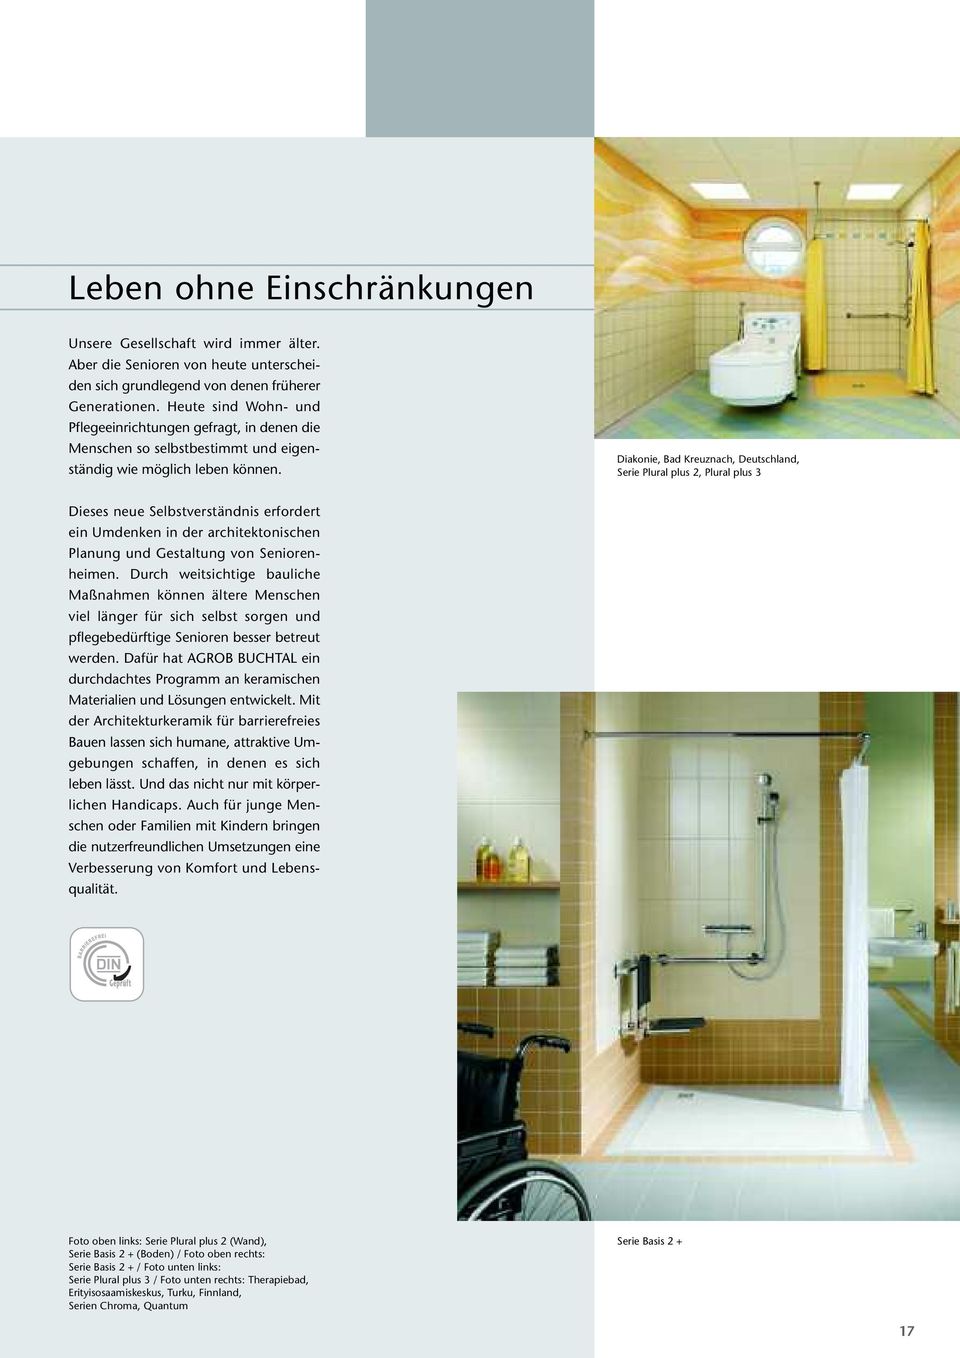 Diakonie, Bad Kreuznach, Deutschland, Serie Plural plus 2, Plural plus 3 Dieses neue Selbstverständnis erfordert ein Umdenken in der architektonischen Planung und Gestaltung von Seniorenheimen.